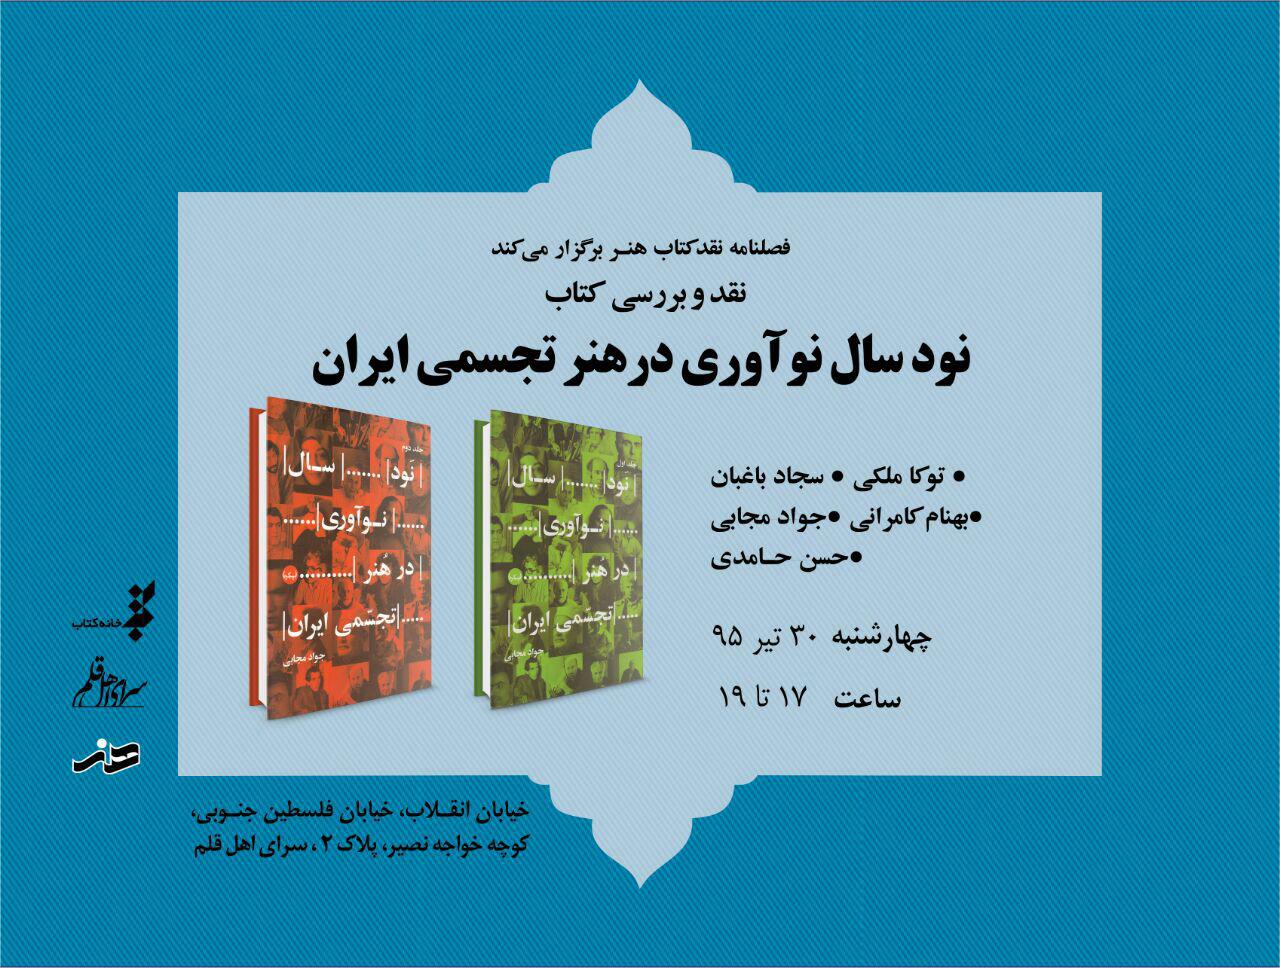 "نود سال نوآوری در هنر تجسمی ایران" نقد می شود